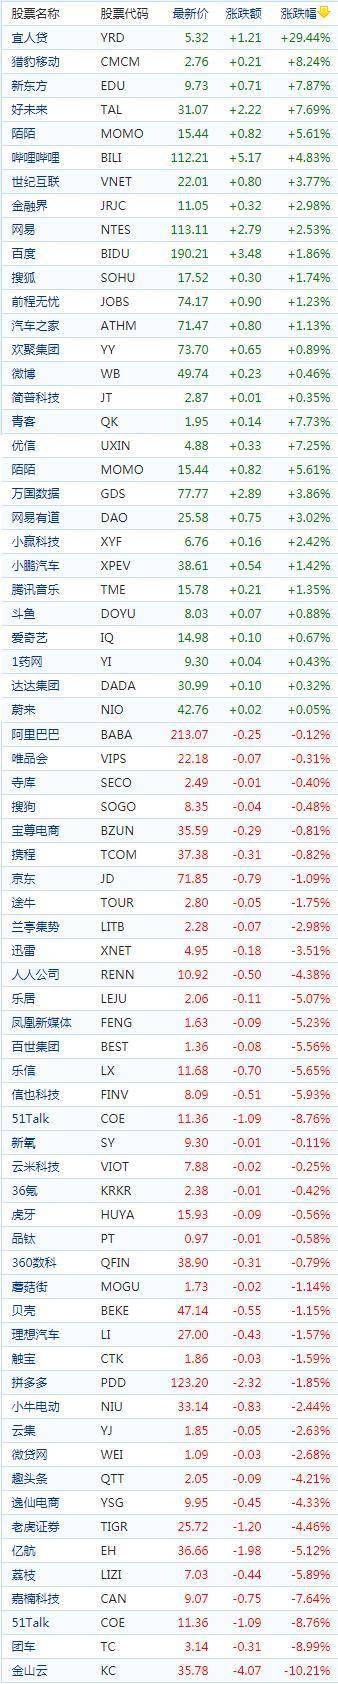 中国概念股周四收盘涨跌互现 教育股走高，游戏驿站跌逾27%